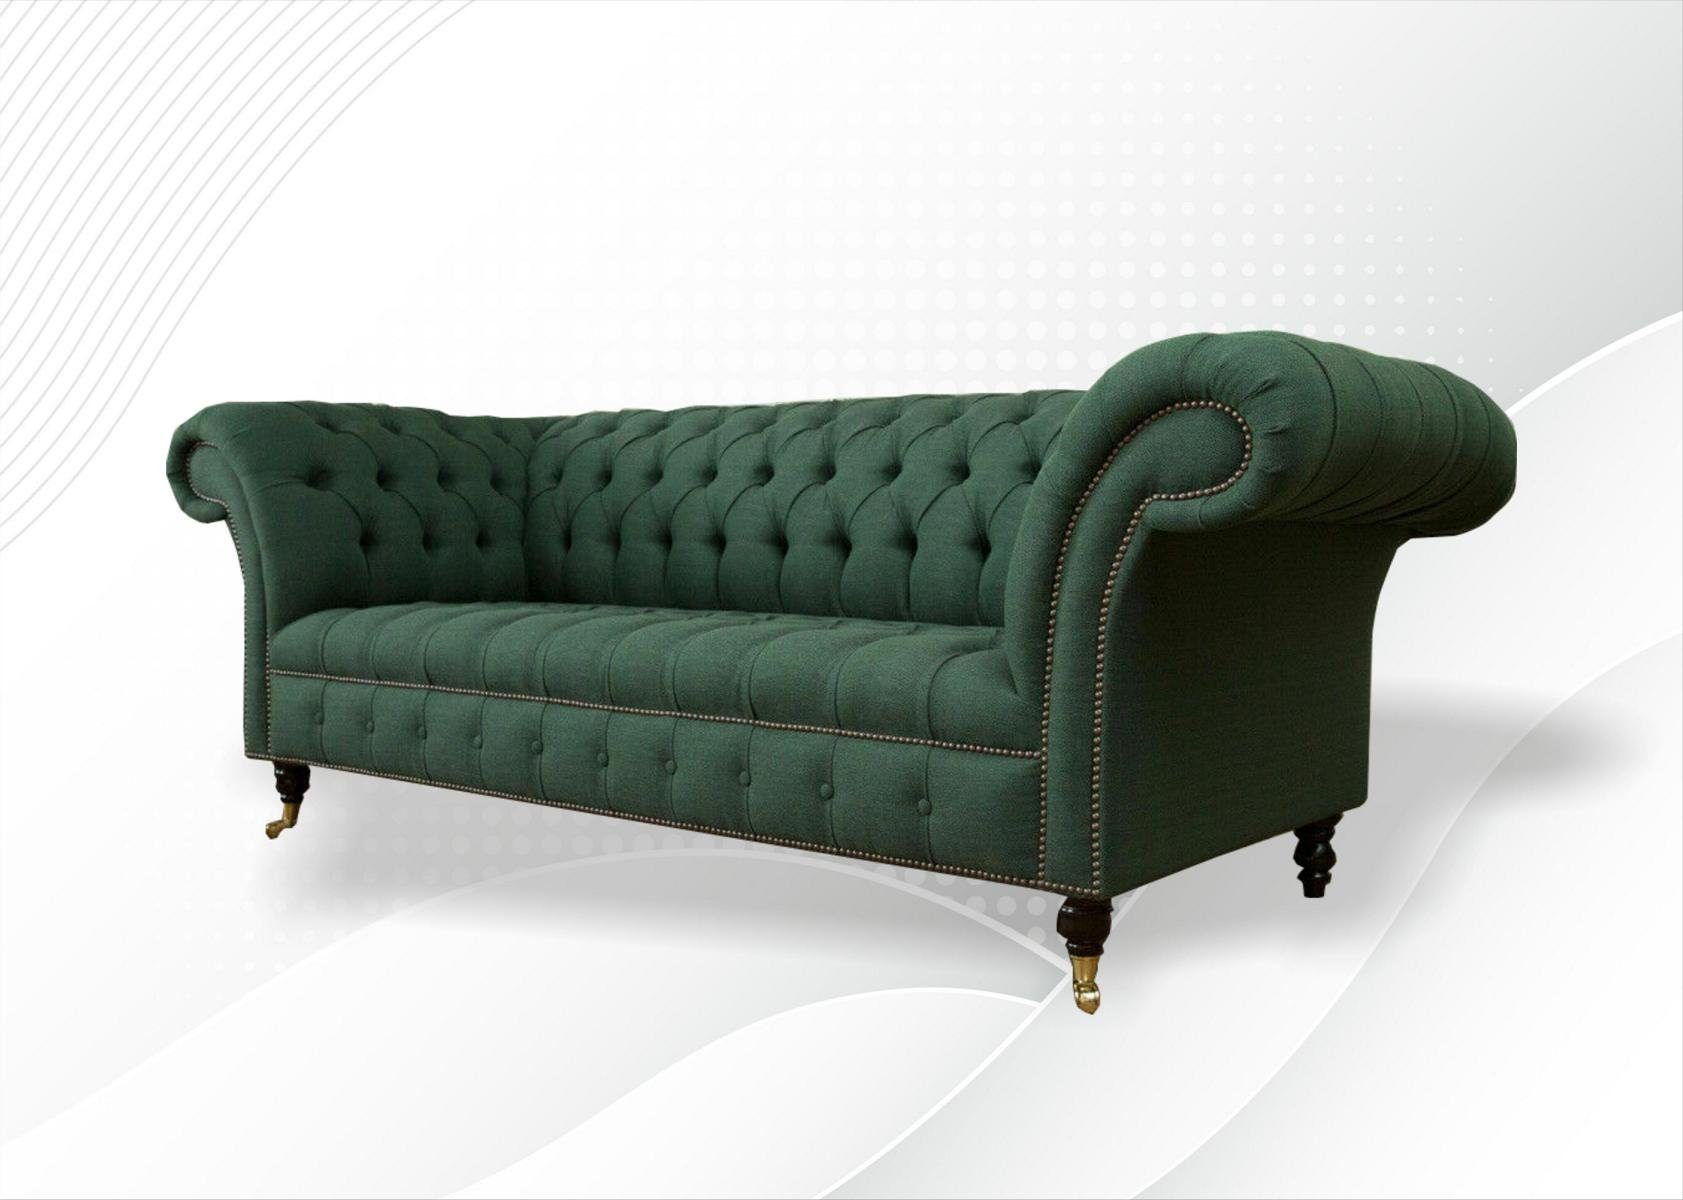 Endpreis im Ausverkauf JVmoebel Chesterfield-Sofa, Sofa Sofa Chesterfield Sitzer Design cm 225 Couch 3